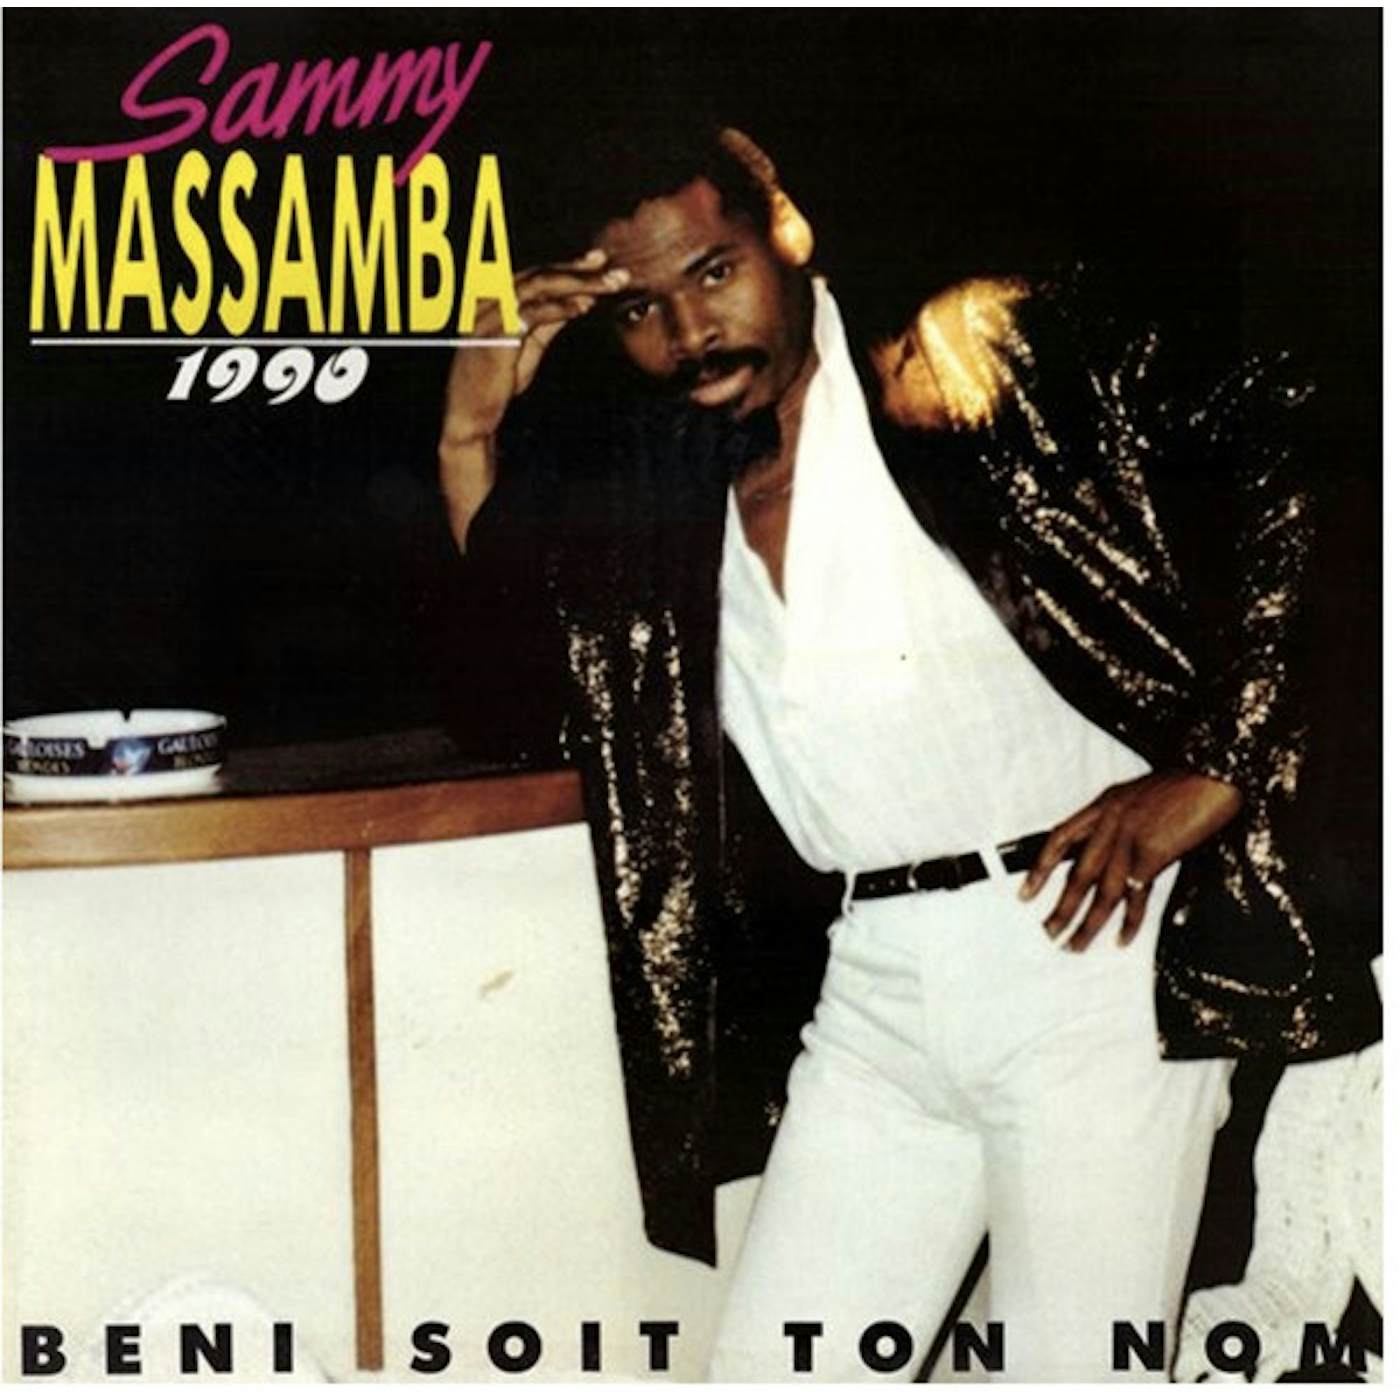 sammy massamba 1990: BENI SOIT TON NOM Vinyl Record